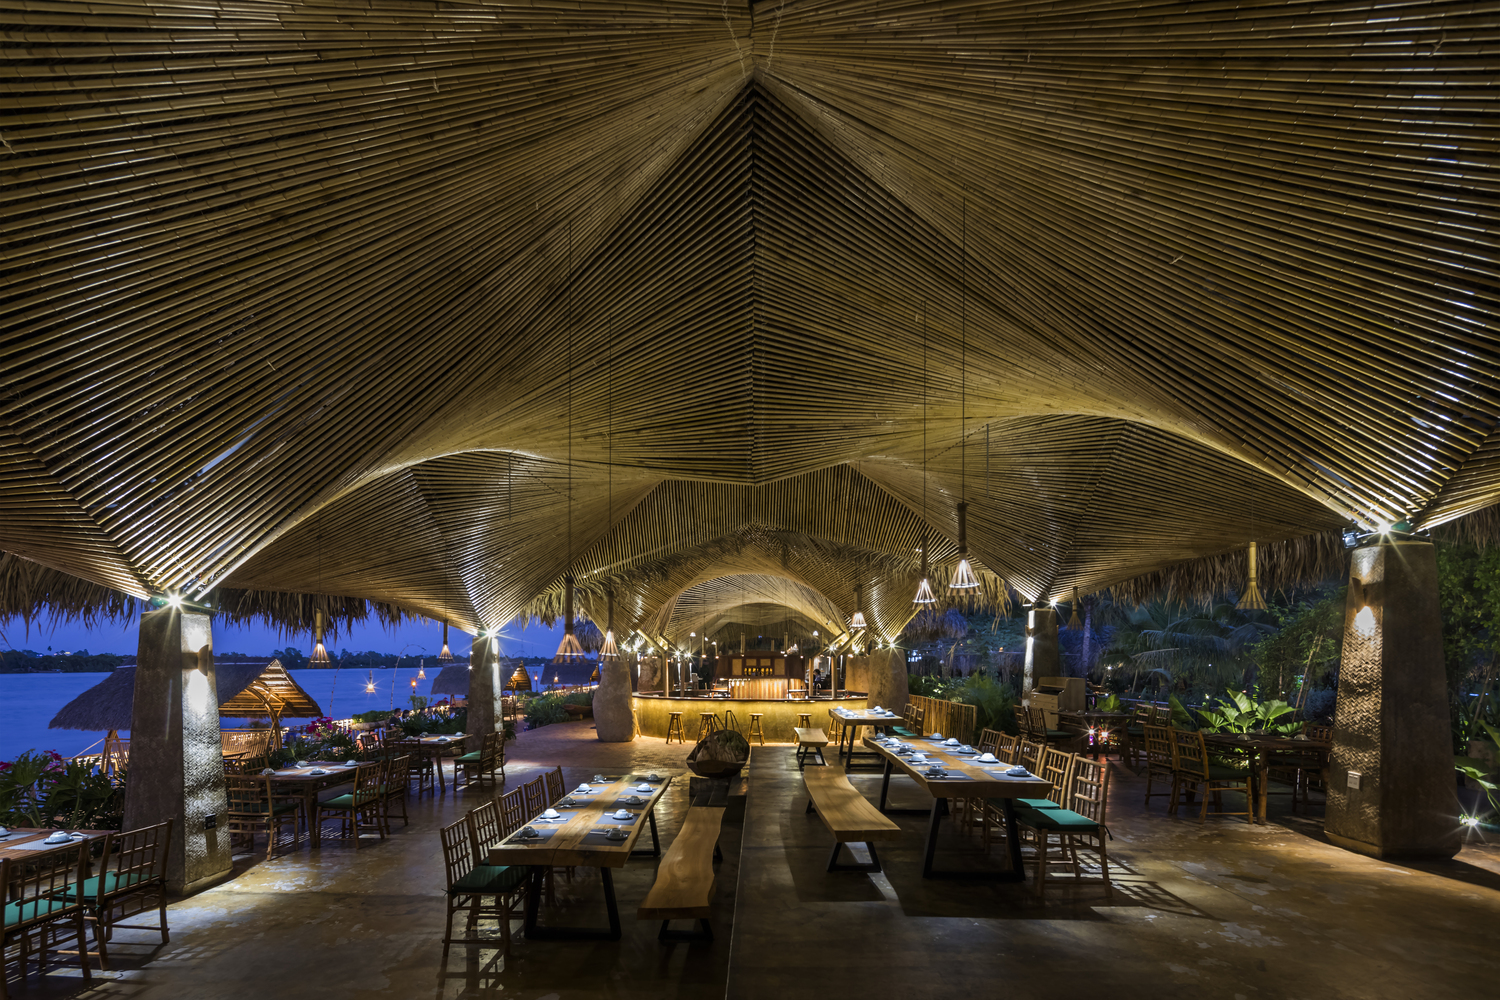 Nhà hàng mái dừa, thân tre ven sông ở miền Tây nổi bật trên báo ngoại - Ảnh 6.